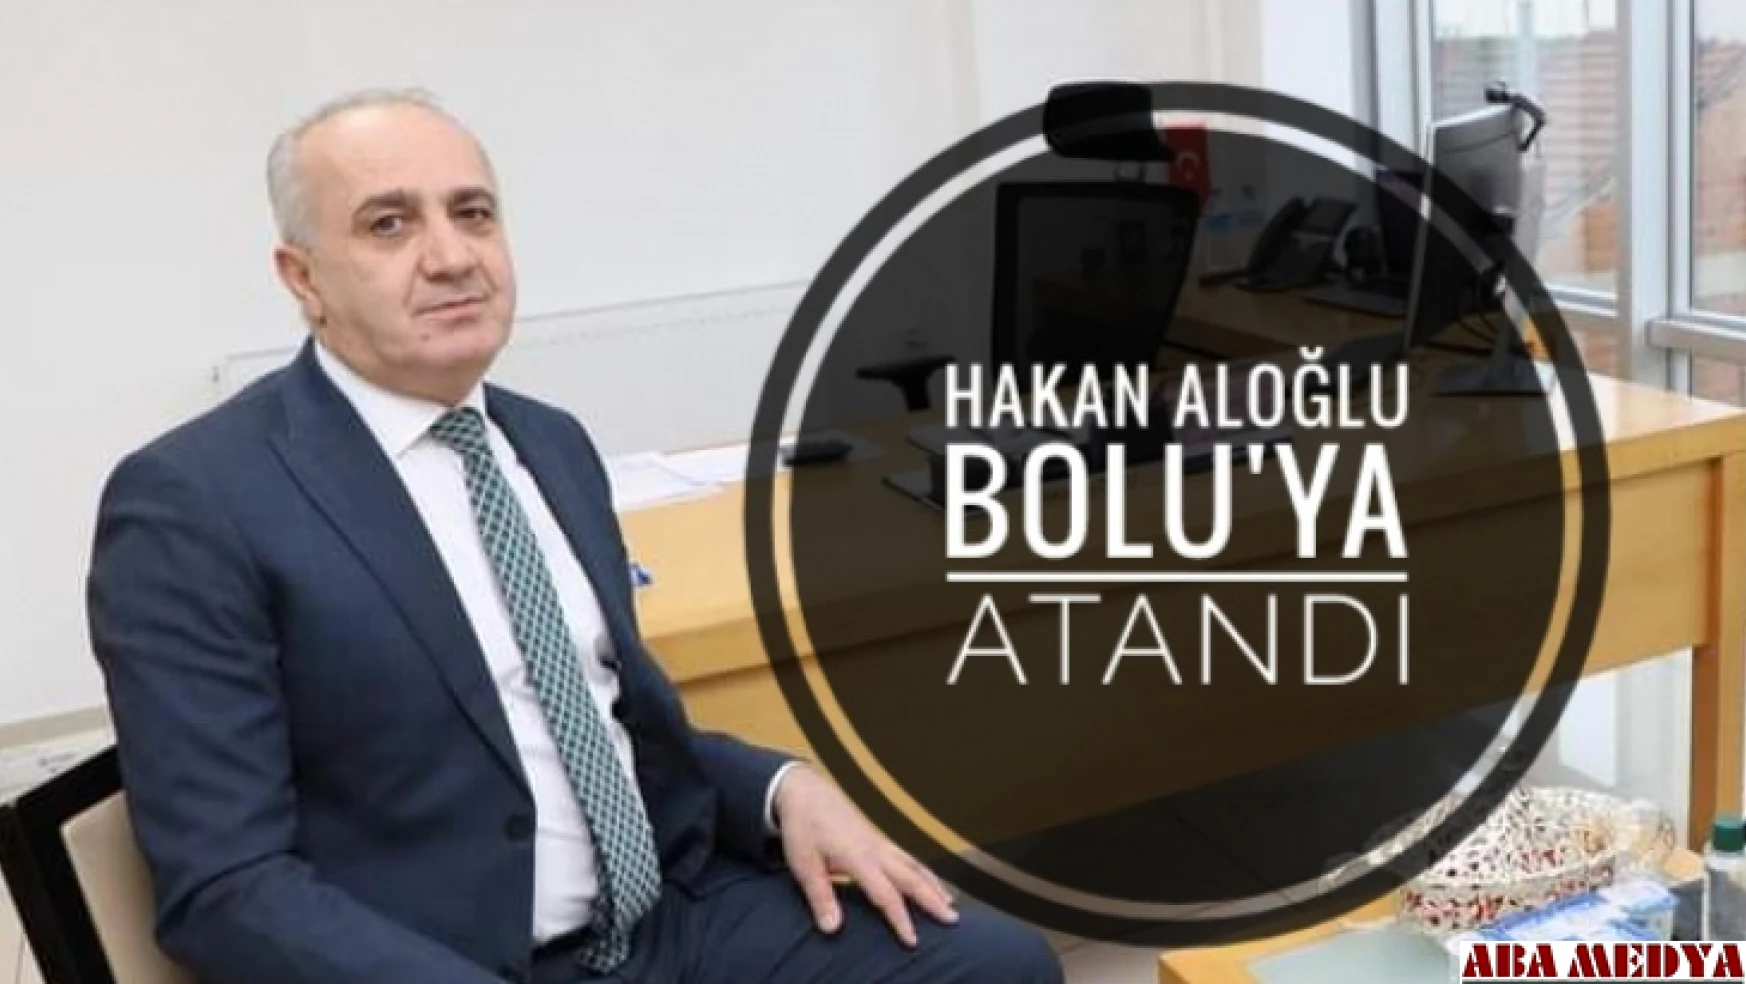 Müdür Hakan Aloğlu Bolu'ya atandı